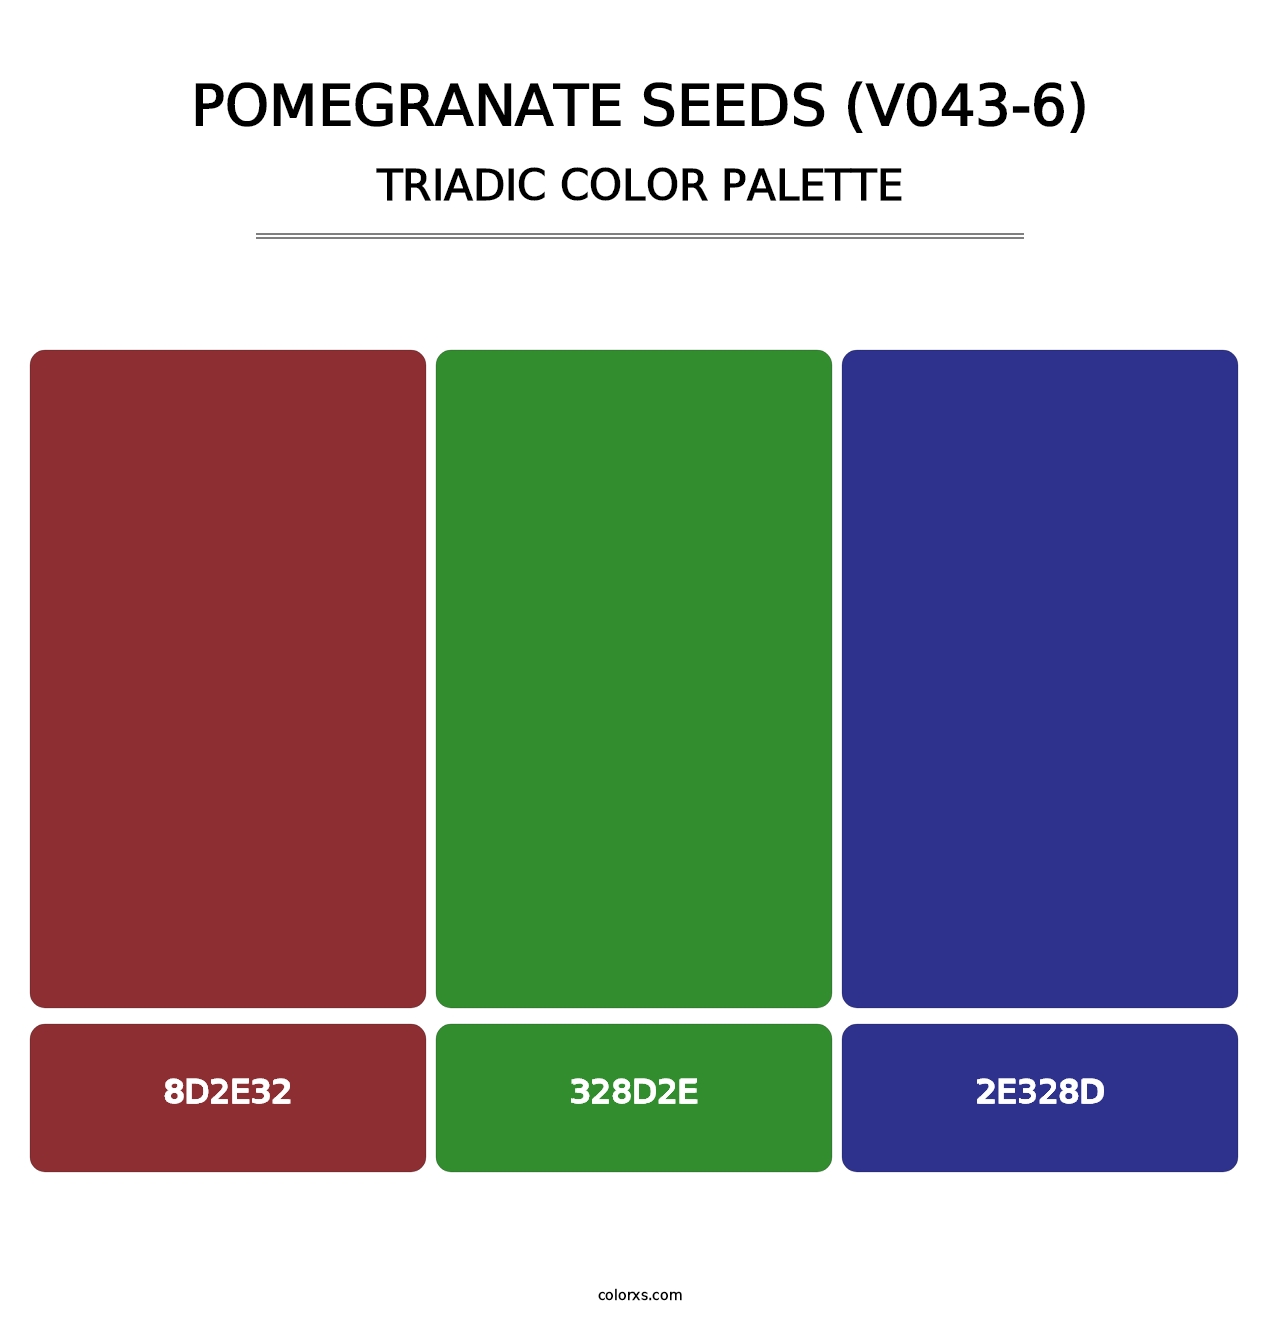 Pomegranate Seeds (V043-6) - Triadic Color Palette